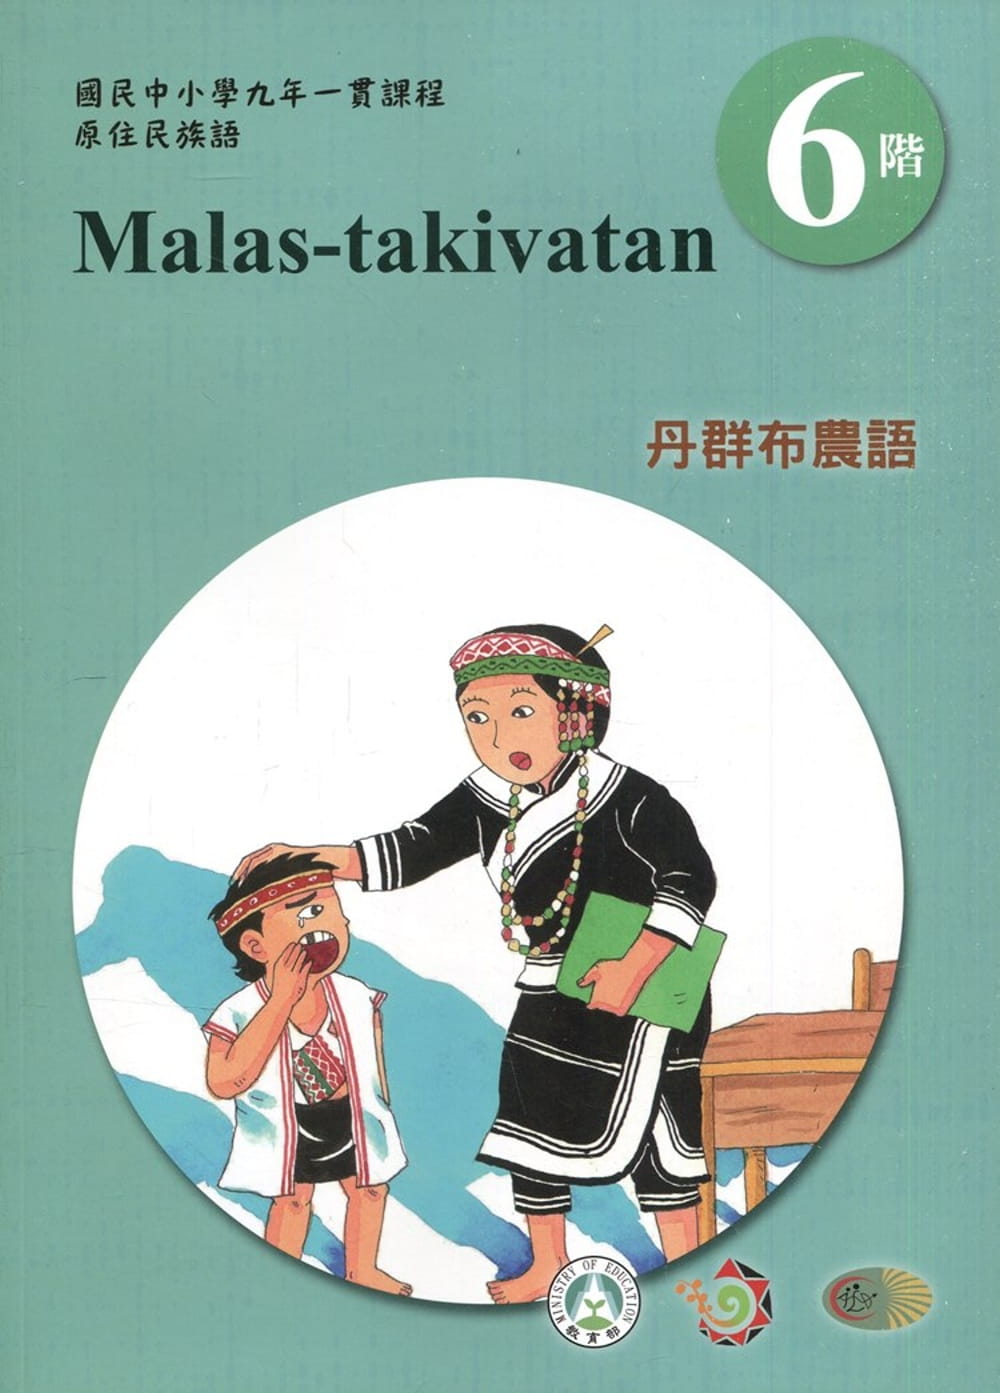 丹群布農語學習手冊第6階(附光碟)3版2刷